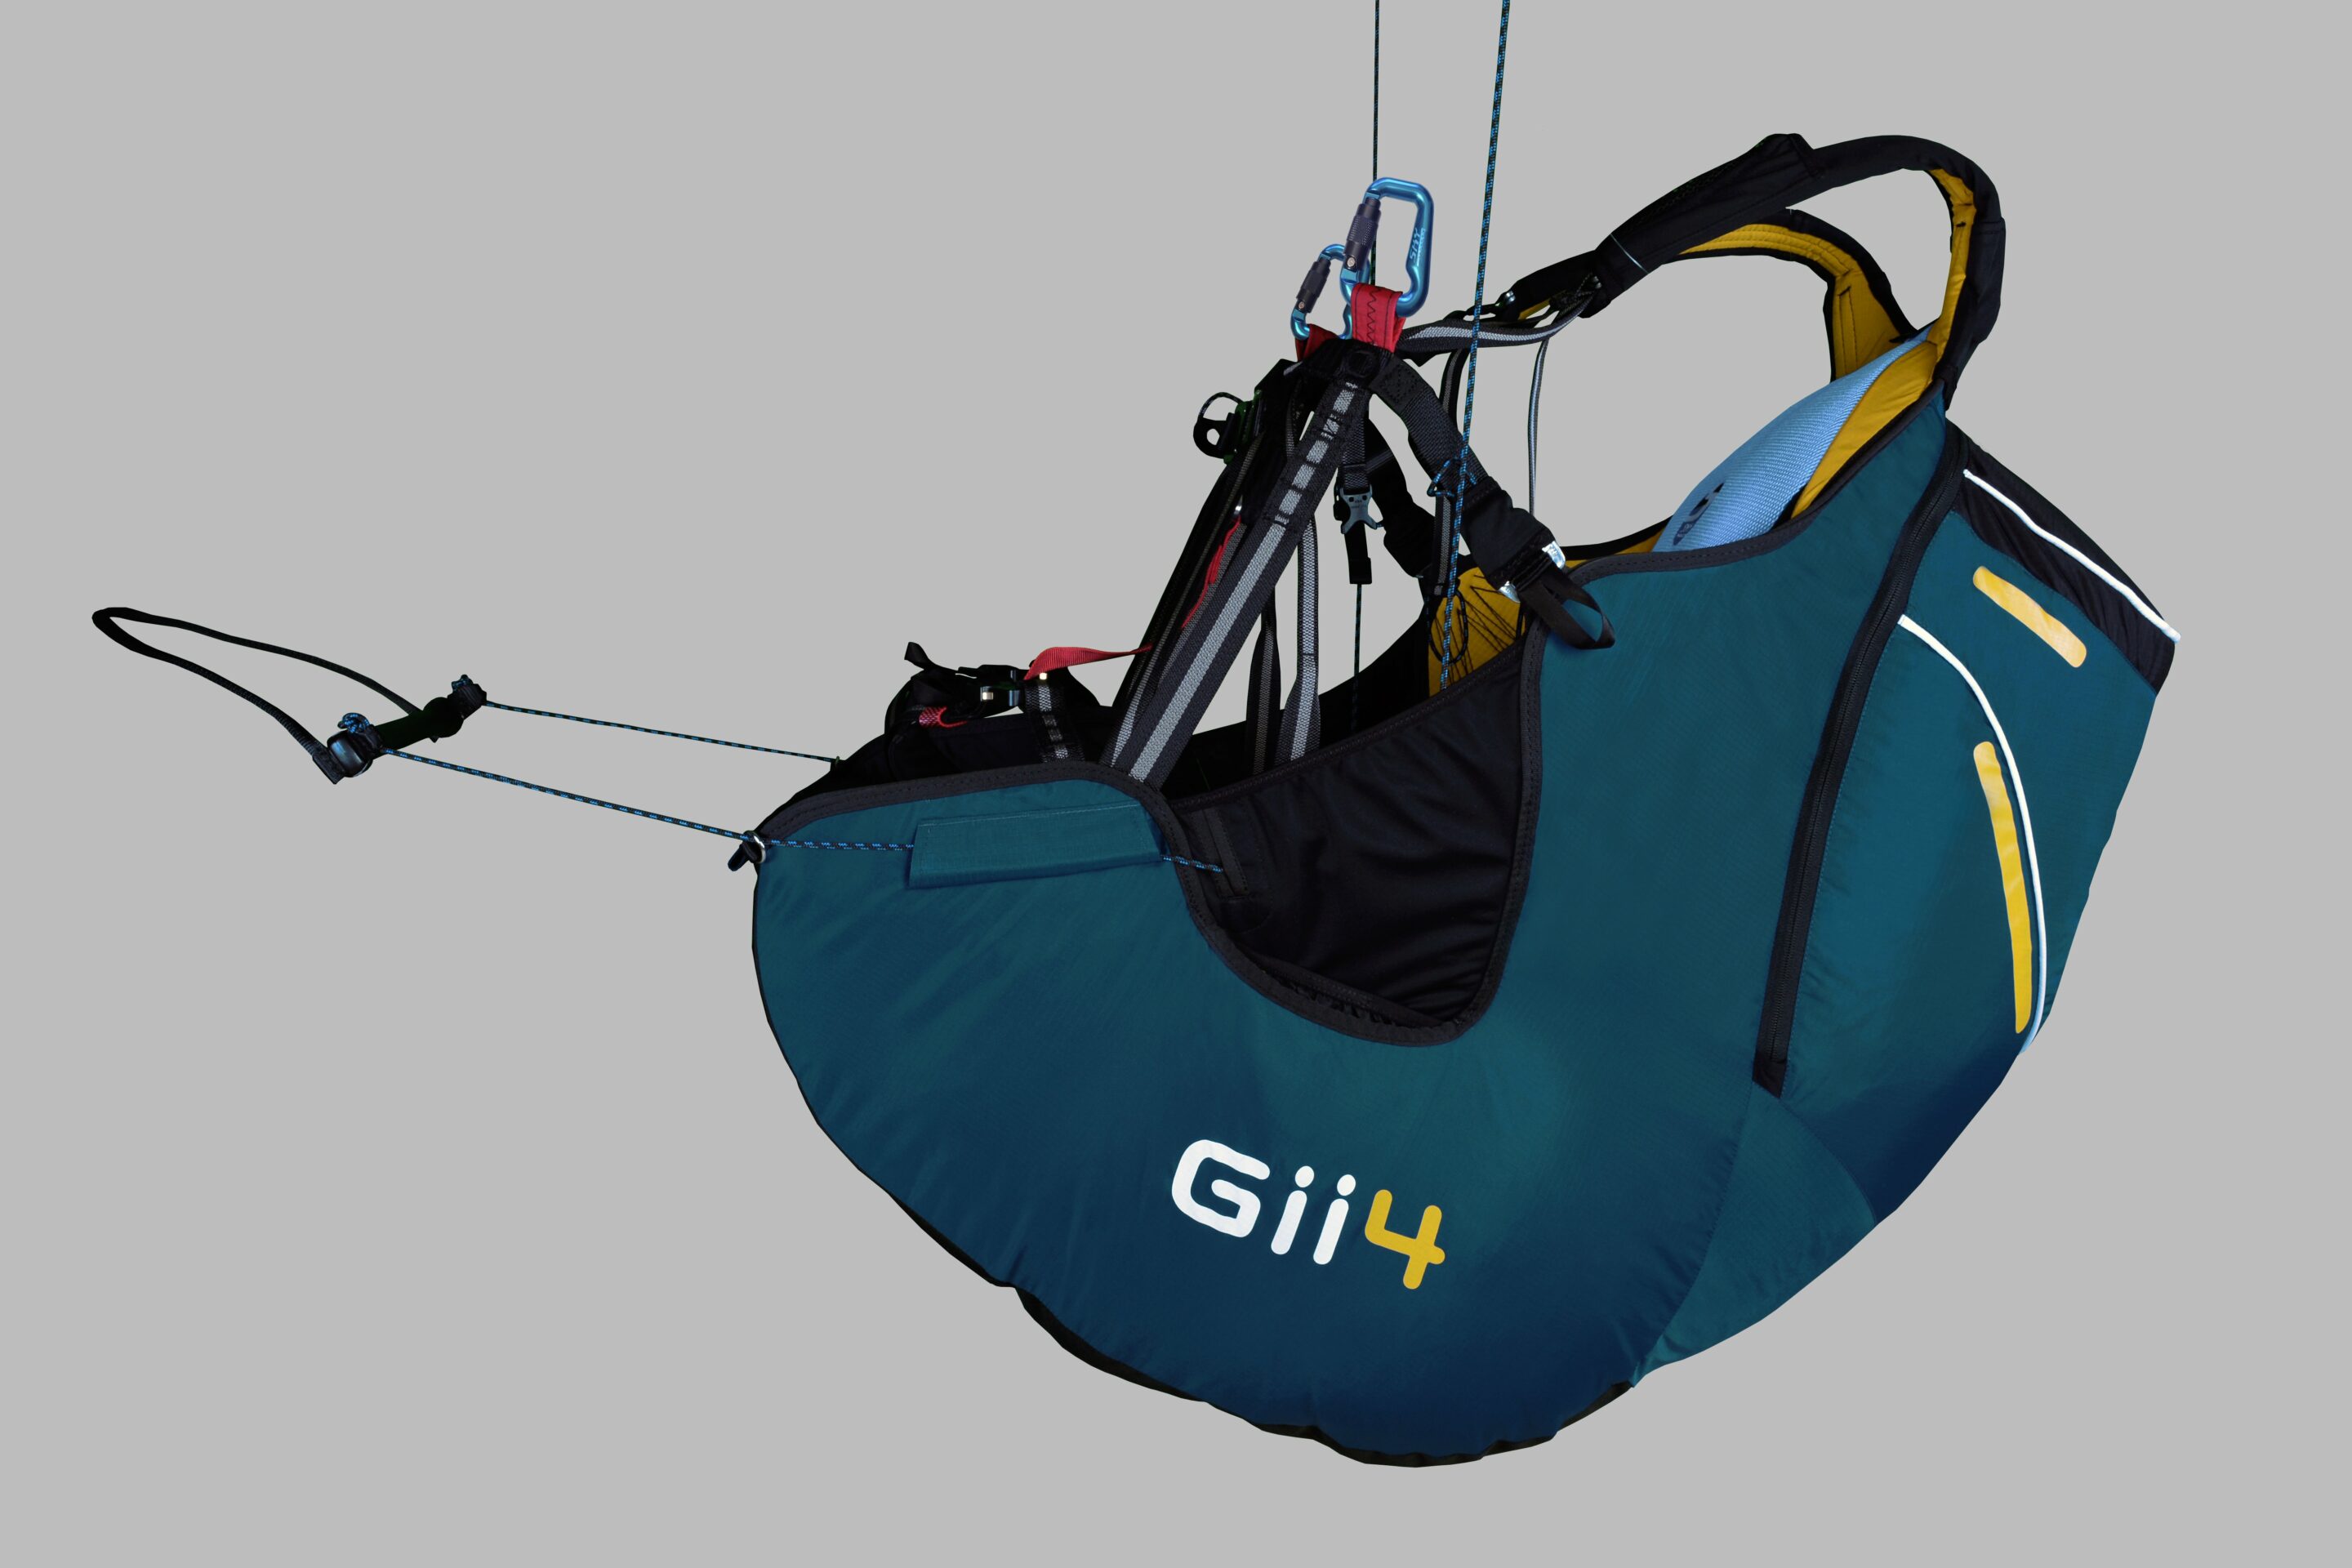 sellette GII 4 ALPHA Sky Paragliders, modèle Navy